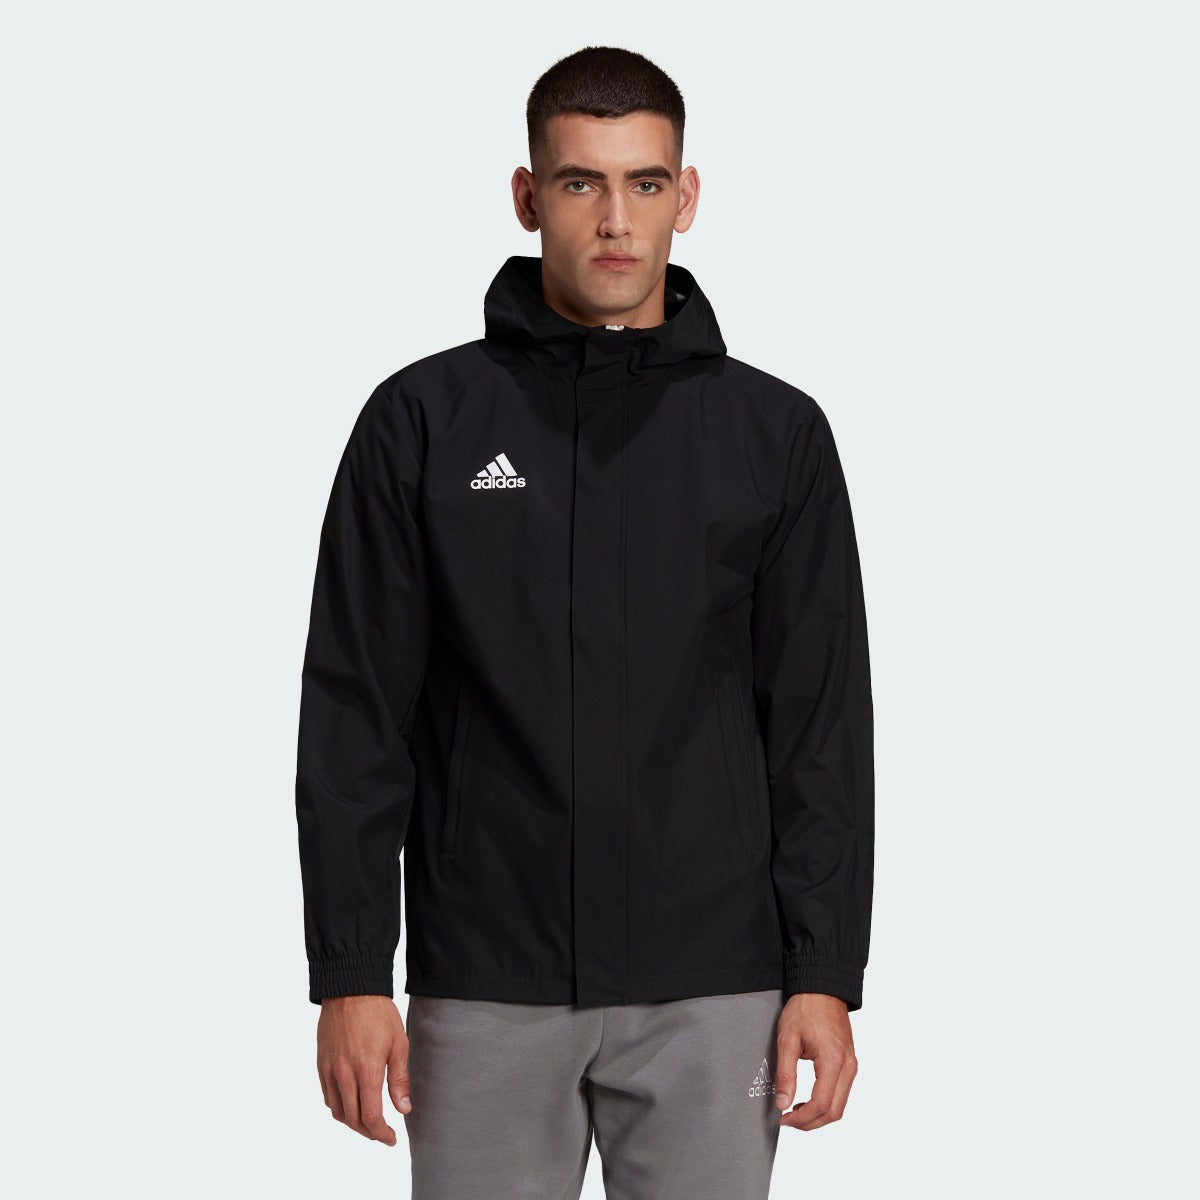 完璧 激レア adidas all blacks allweather jacket ラグビー - uimptv.es